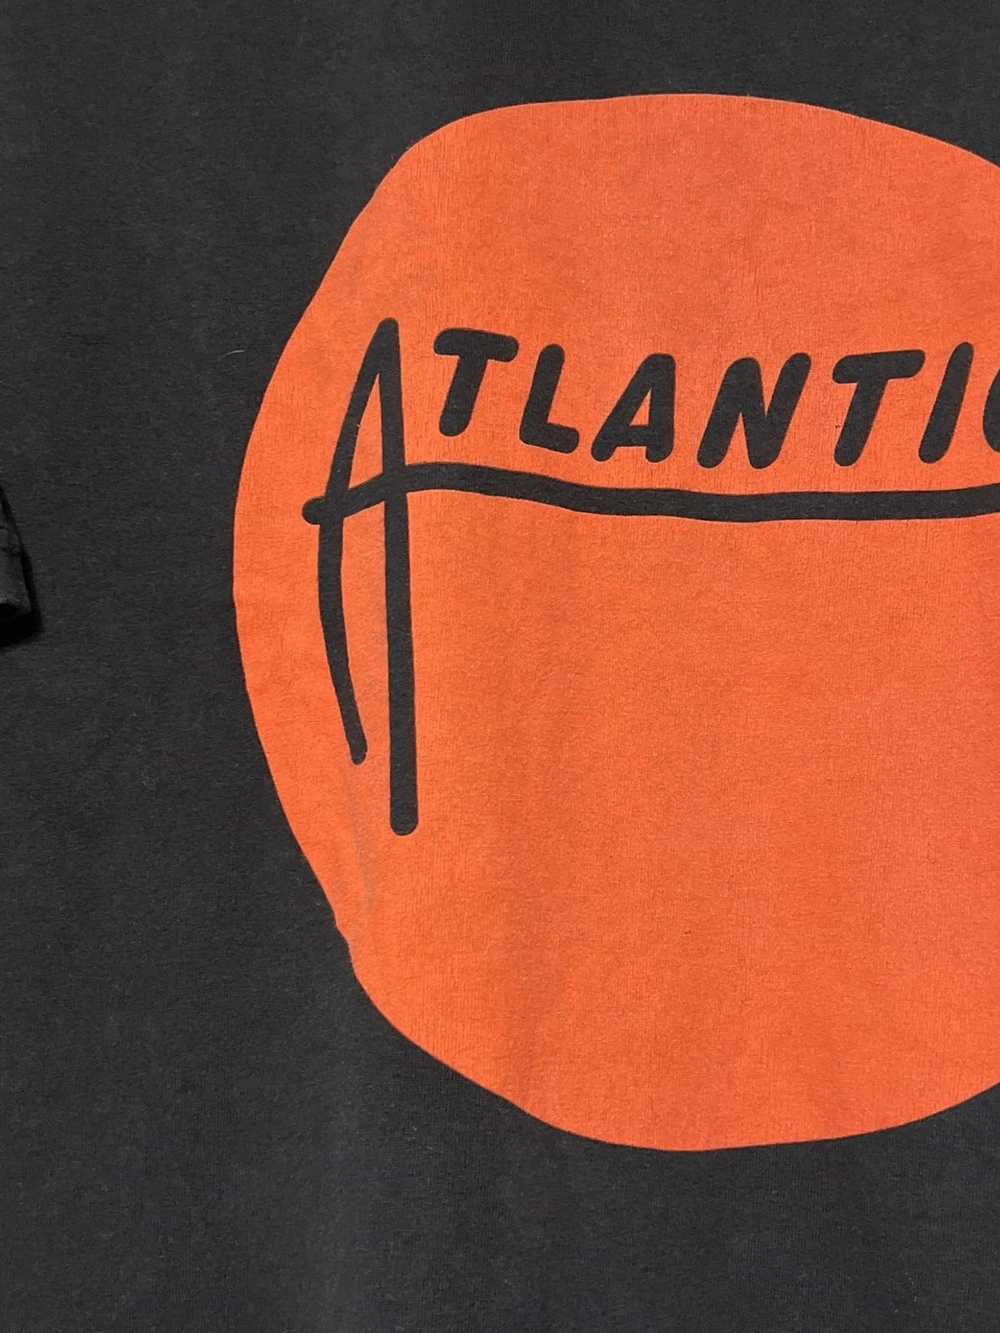 Band Tees × Vintage Vintage Atlantic Records Orig… - image 3